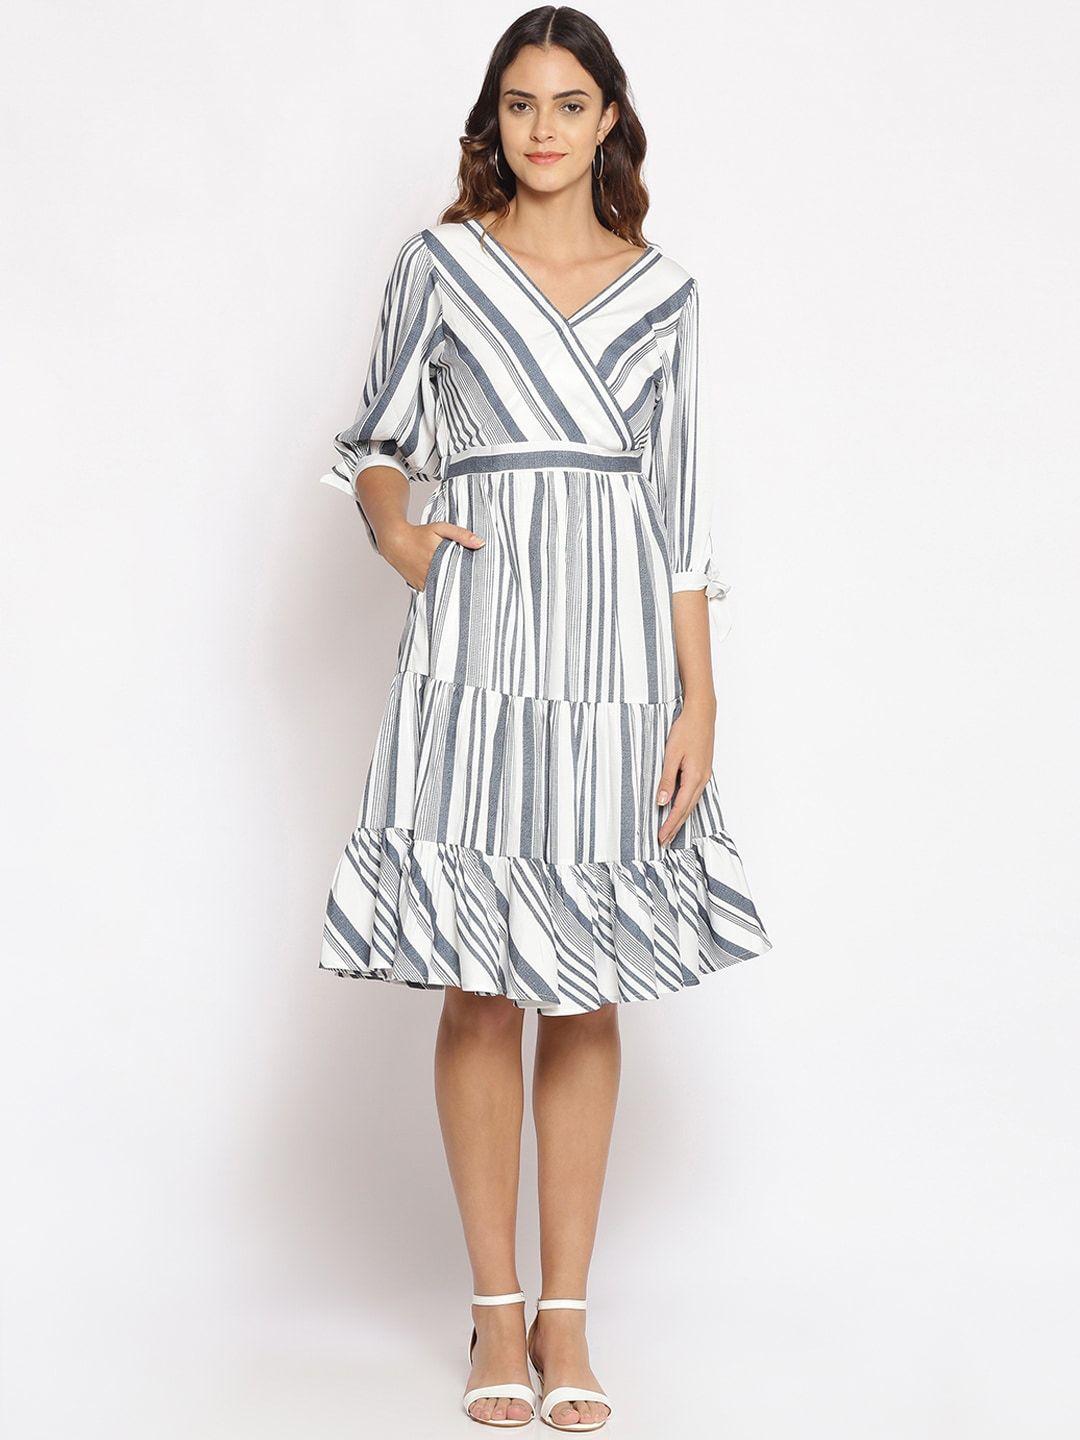 oxolloxo-white-&-grey-striped-satin-dress